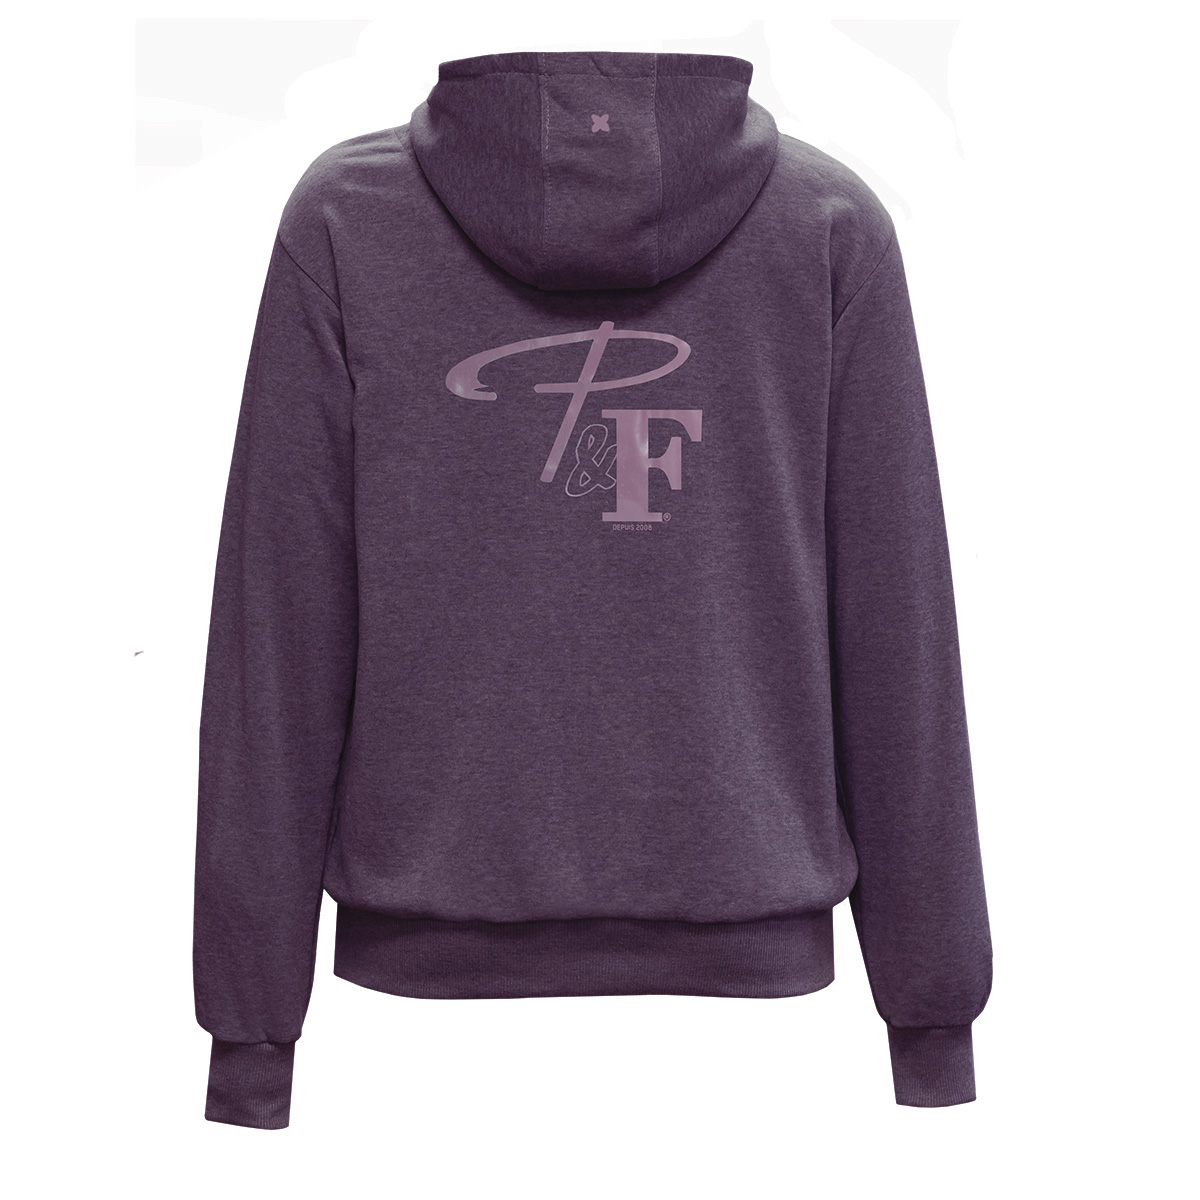 chandail-coton-ouaté-a-capuchon-couleur-prune-hoodie-sweatshirt-purple-color-PF466-18-vue-dos-back-view